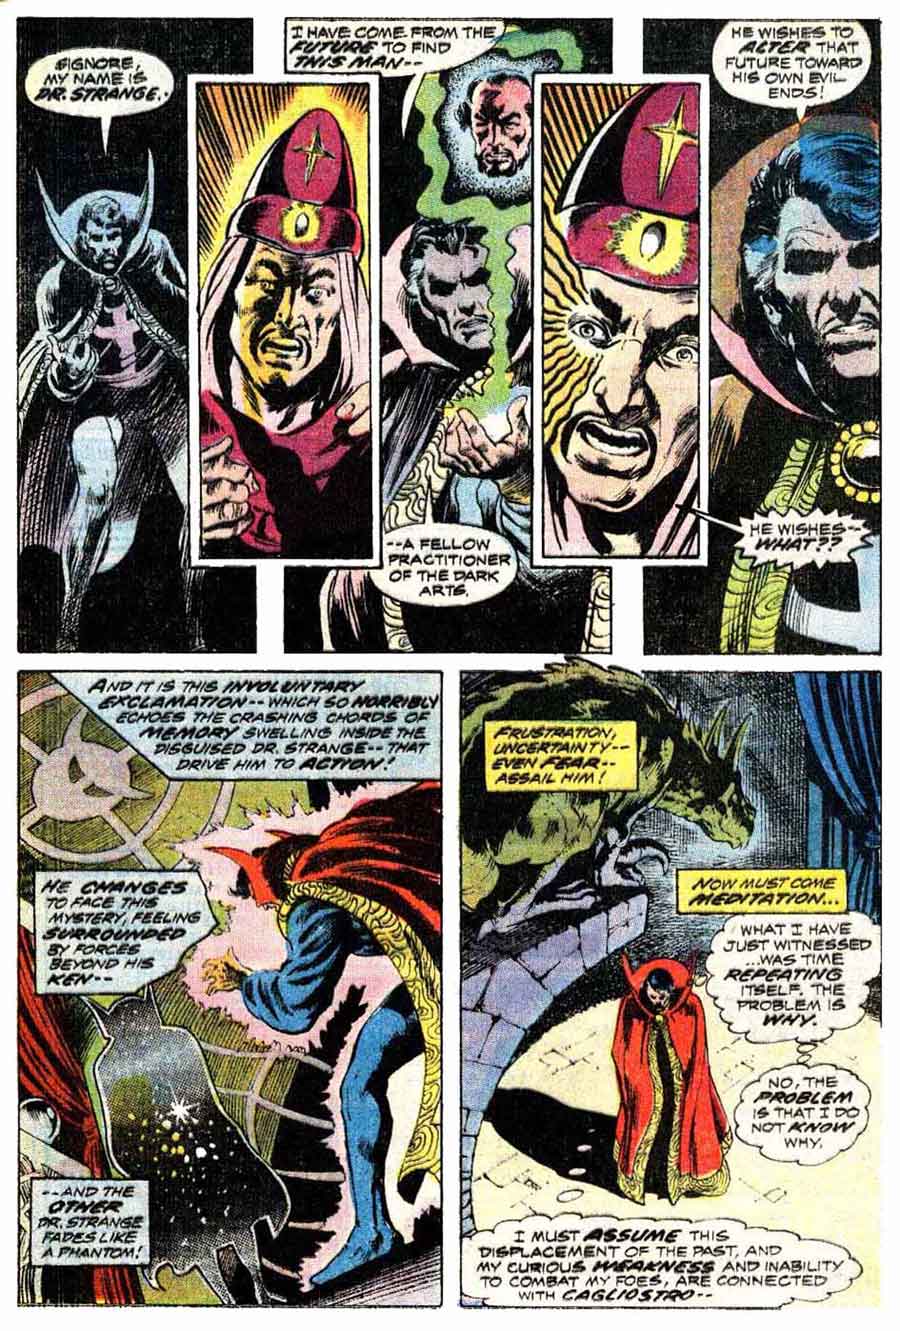 Marvel Premiere #13 / Doctor Strange marvel 1970s comic book page by Frank Brunner